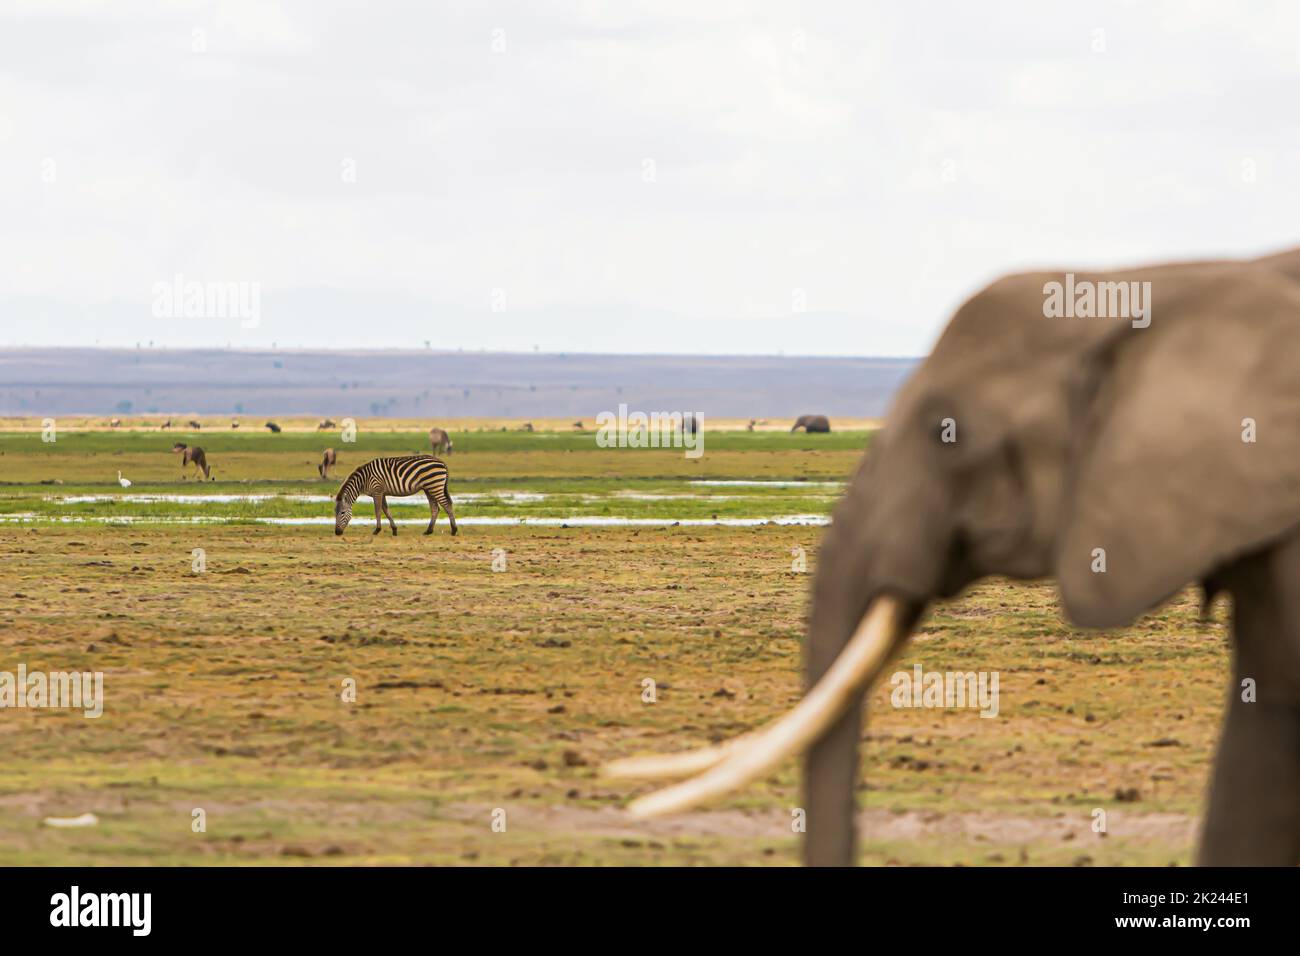 Zebras and elephant in Amboseli National Park, Kenya Stock Photo